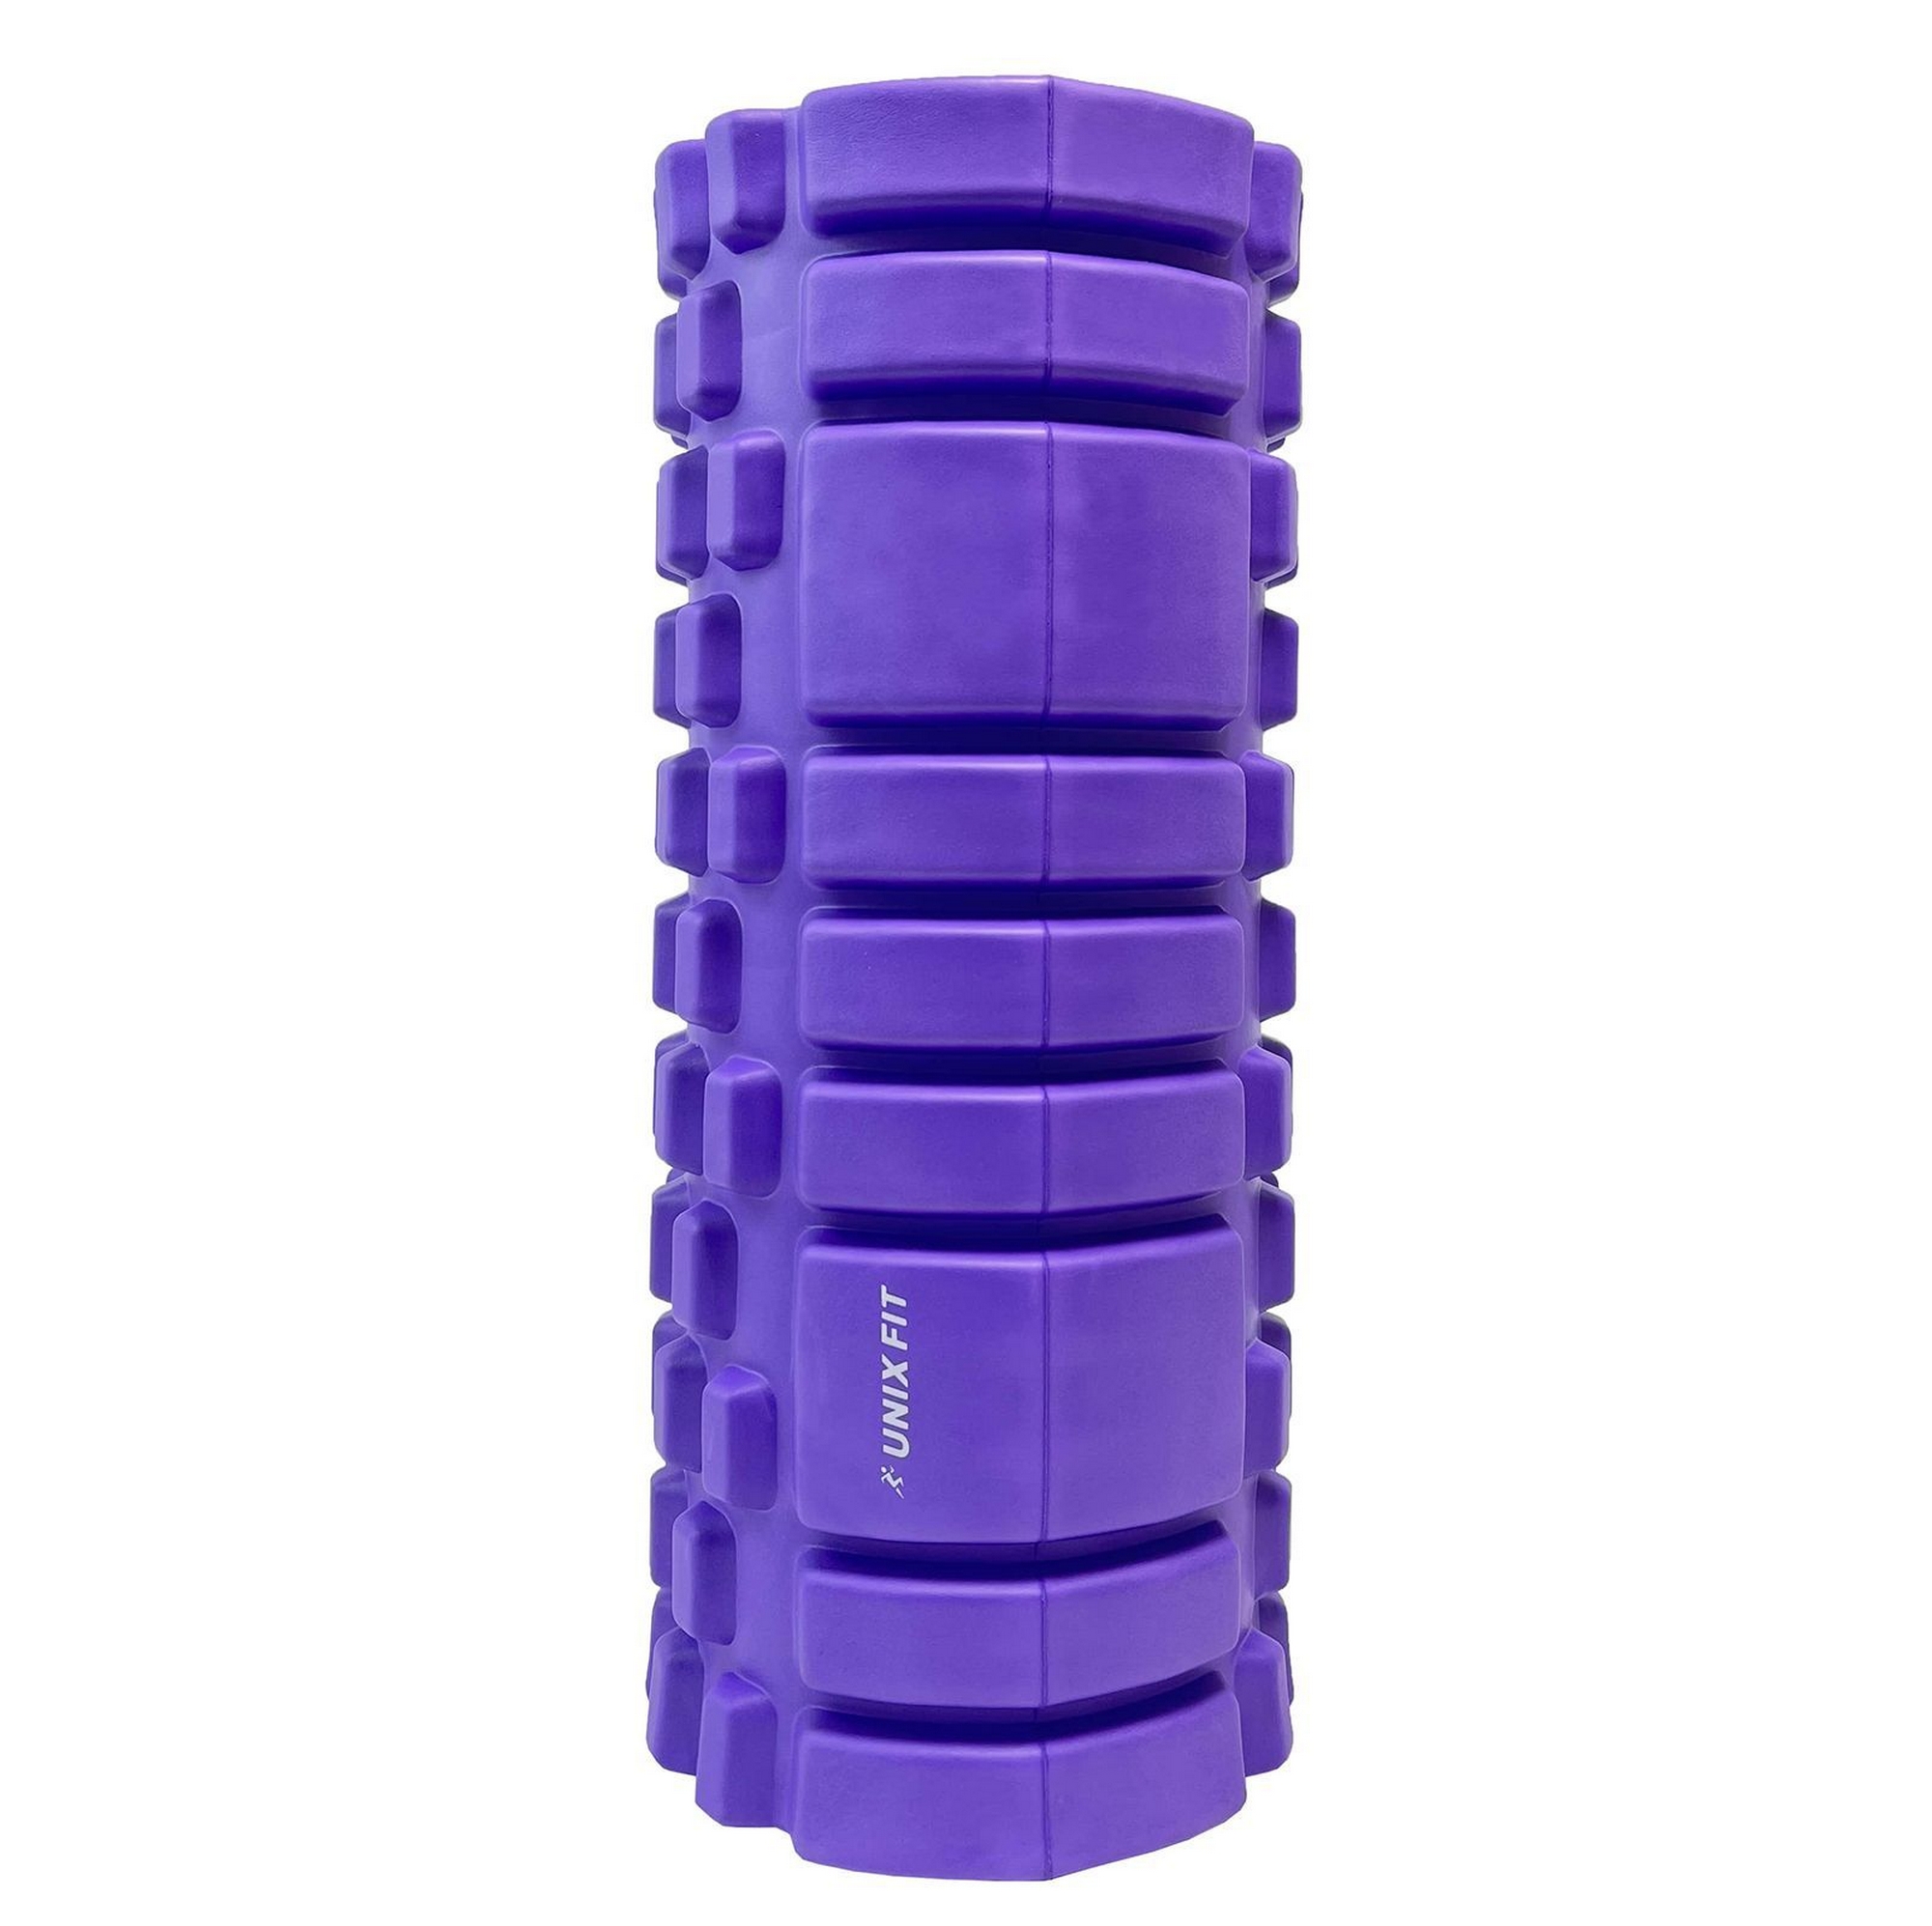 Ролик массажный для йоги и фитнеса 45 см UnixFit FRU45CMVT фиолетовый 2000_1994